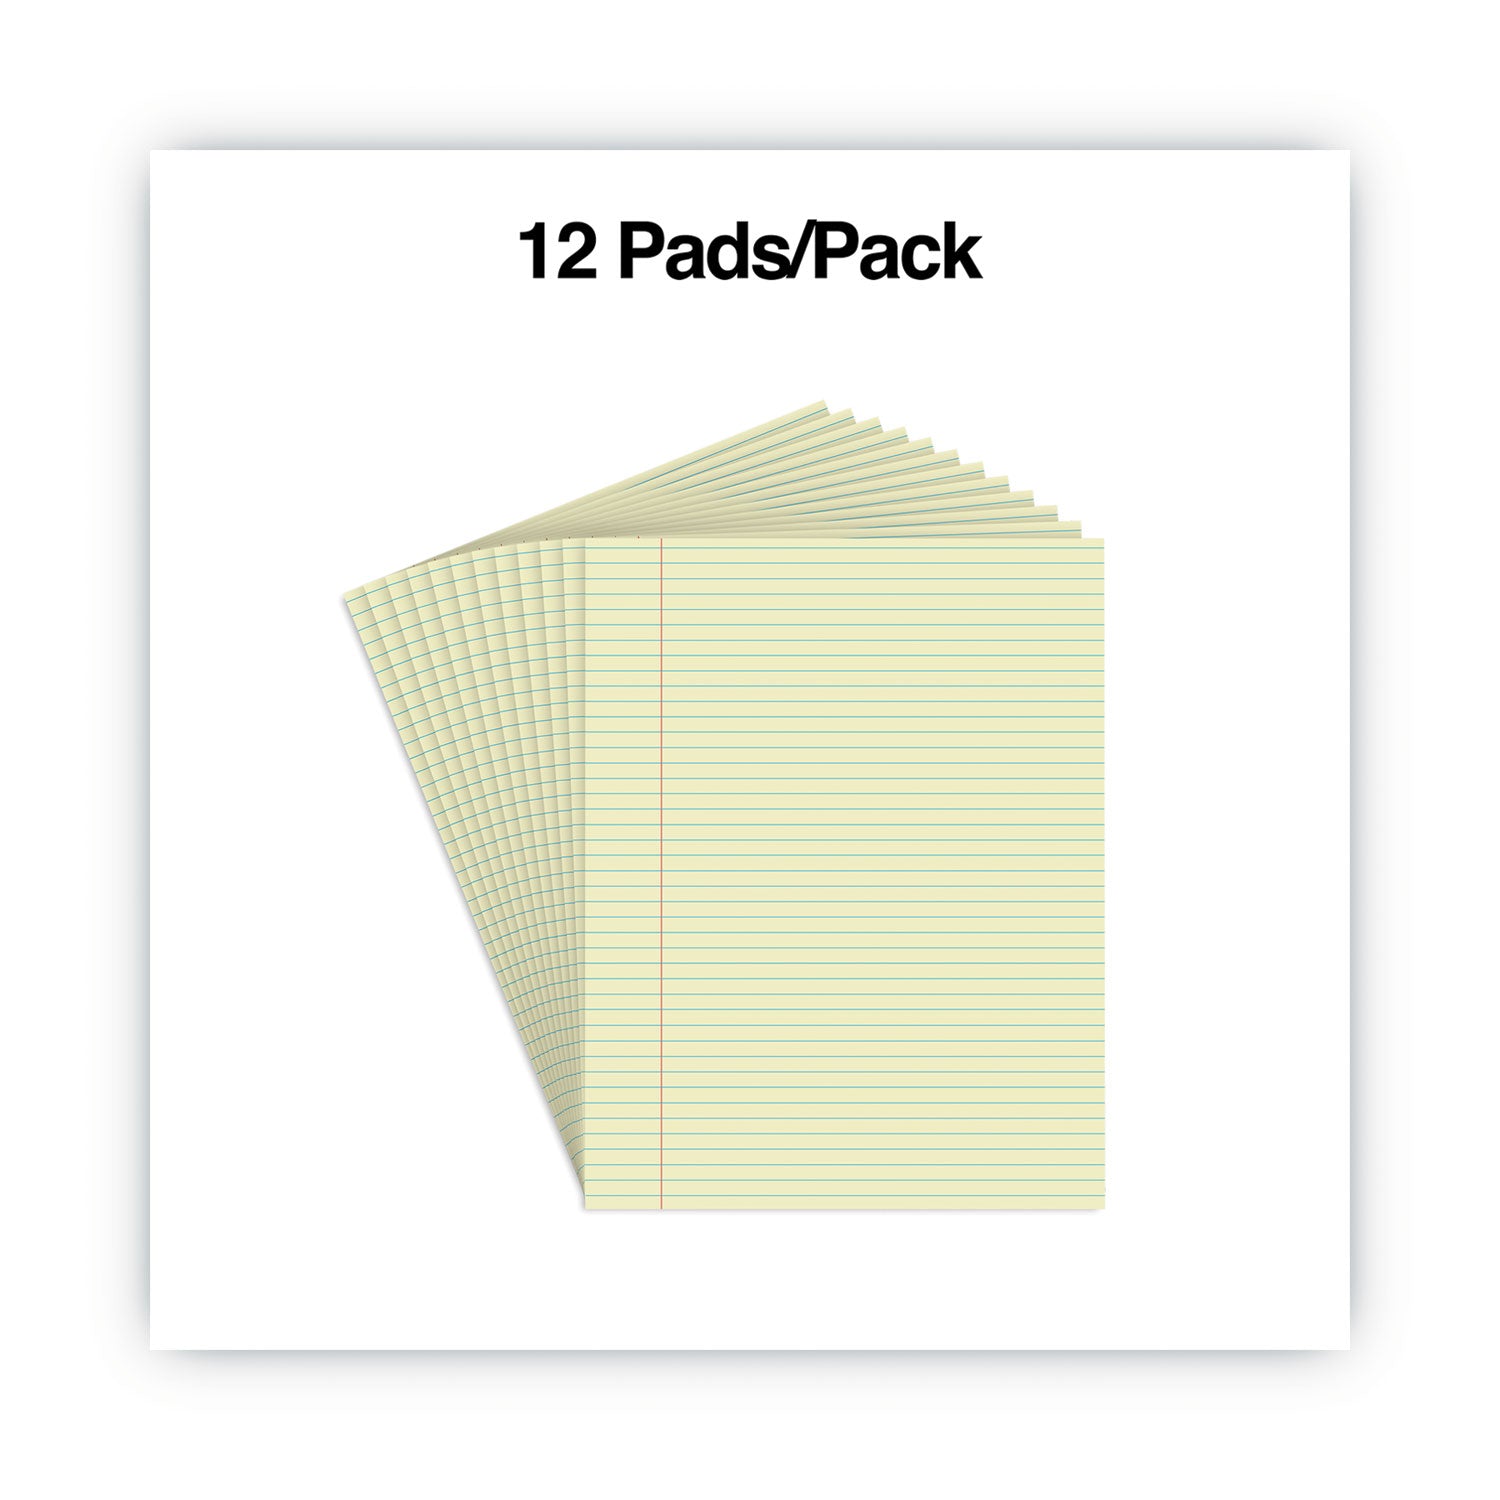 Glue Top Pads, Narrow Rule, 50 Canary-Yellow 8.5 x 11 Sheets, Dozen - 